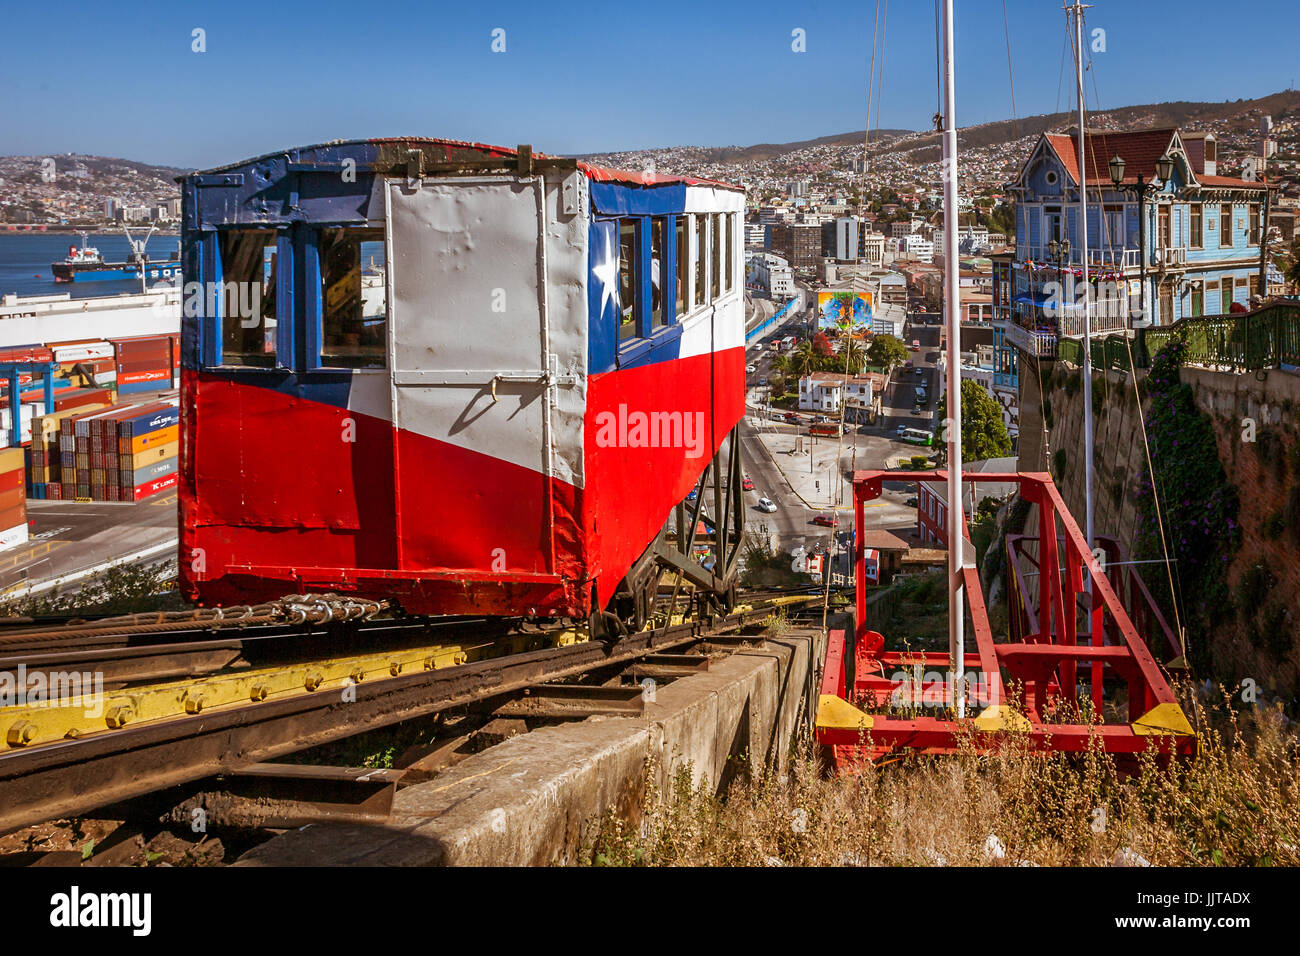 Valparaiso, Chile, 11. Januar 2017: Ankunft des Aufzugs Artillería in der Station. Historisches Denkmal im Jahr 1893 erbaut. Steht für die Dekoration Stockfoto